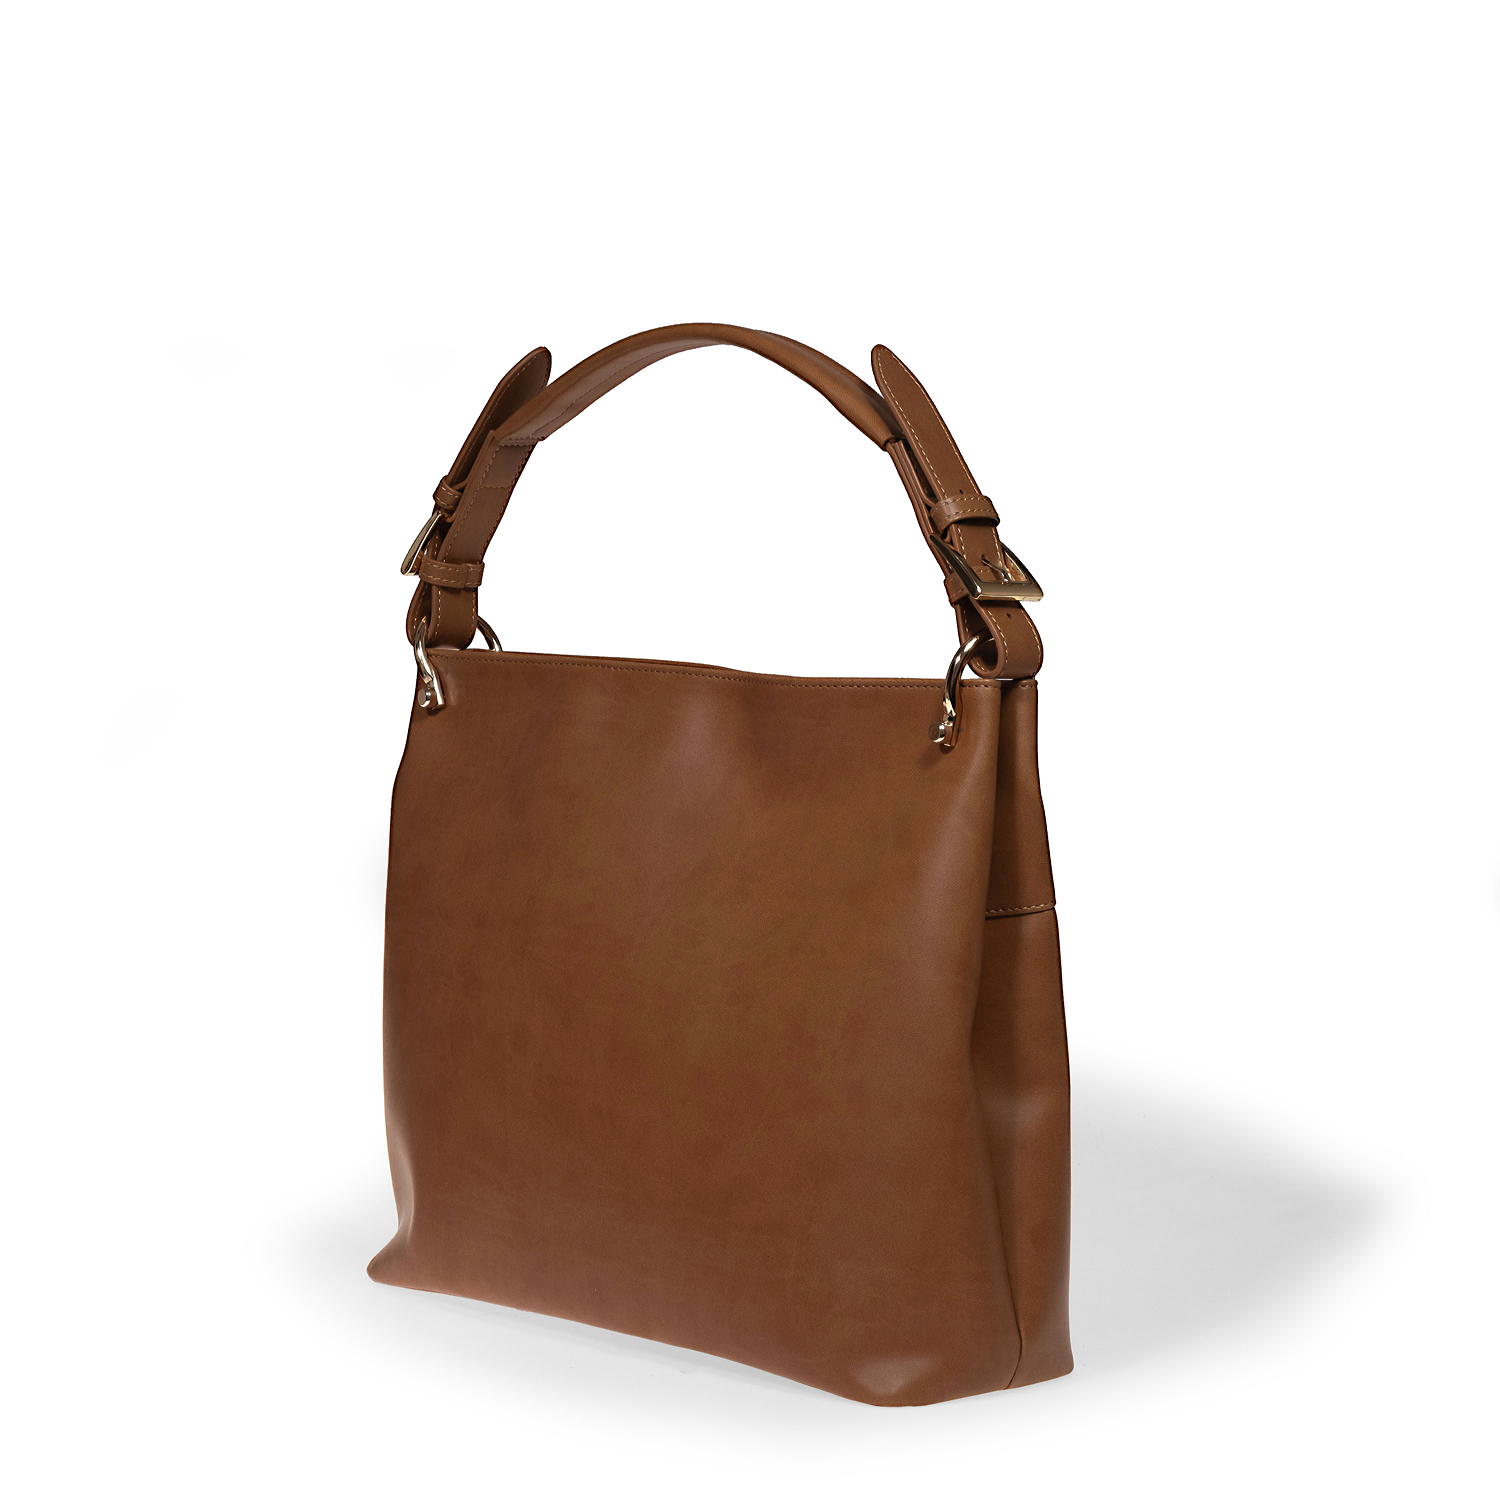 Appleskin handbags by Bellini, Made in Italy. Luxury vegan leather handbags. Wholesale, OEM, private label handbags.